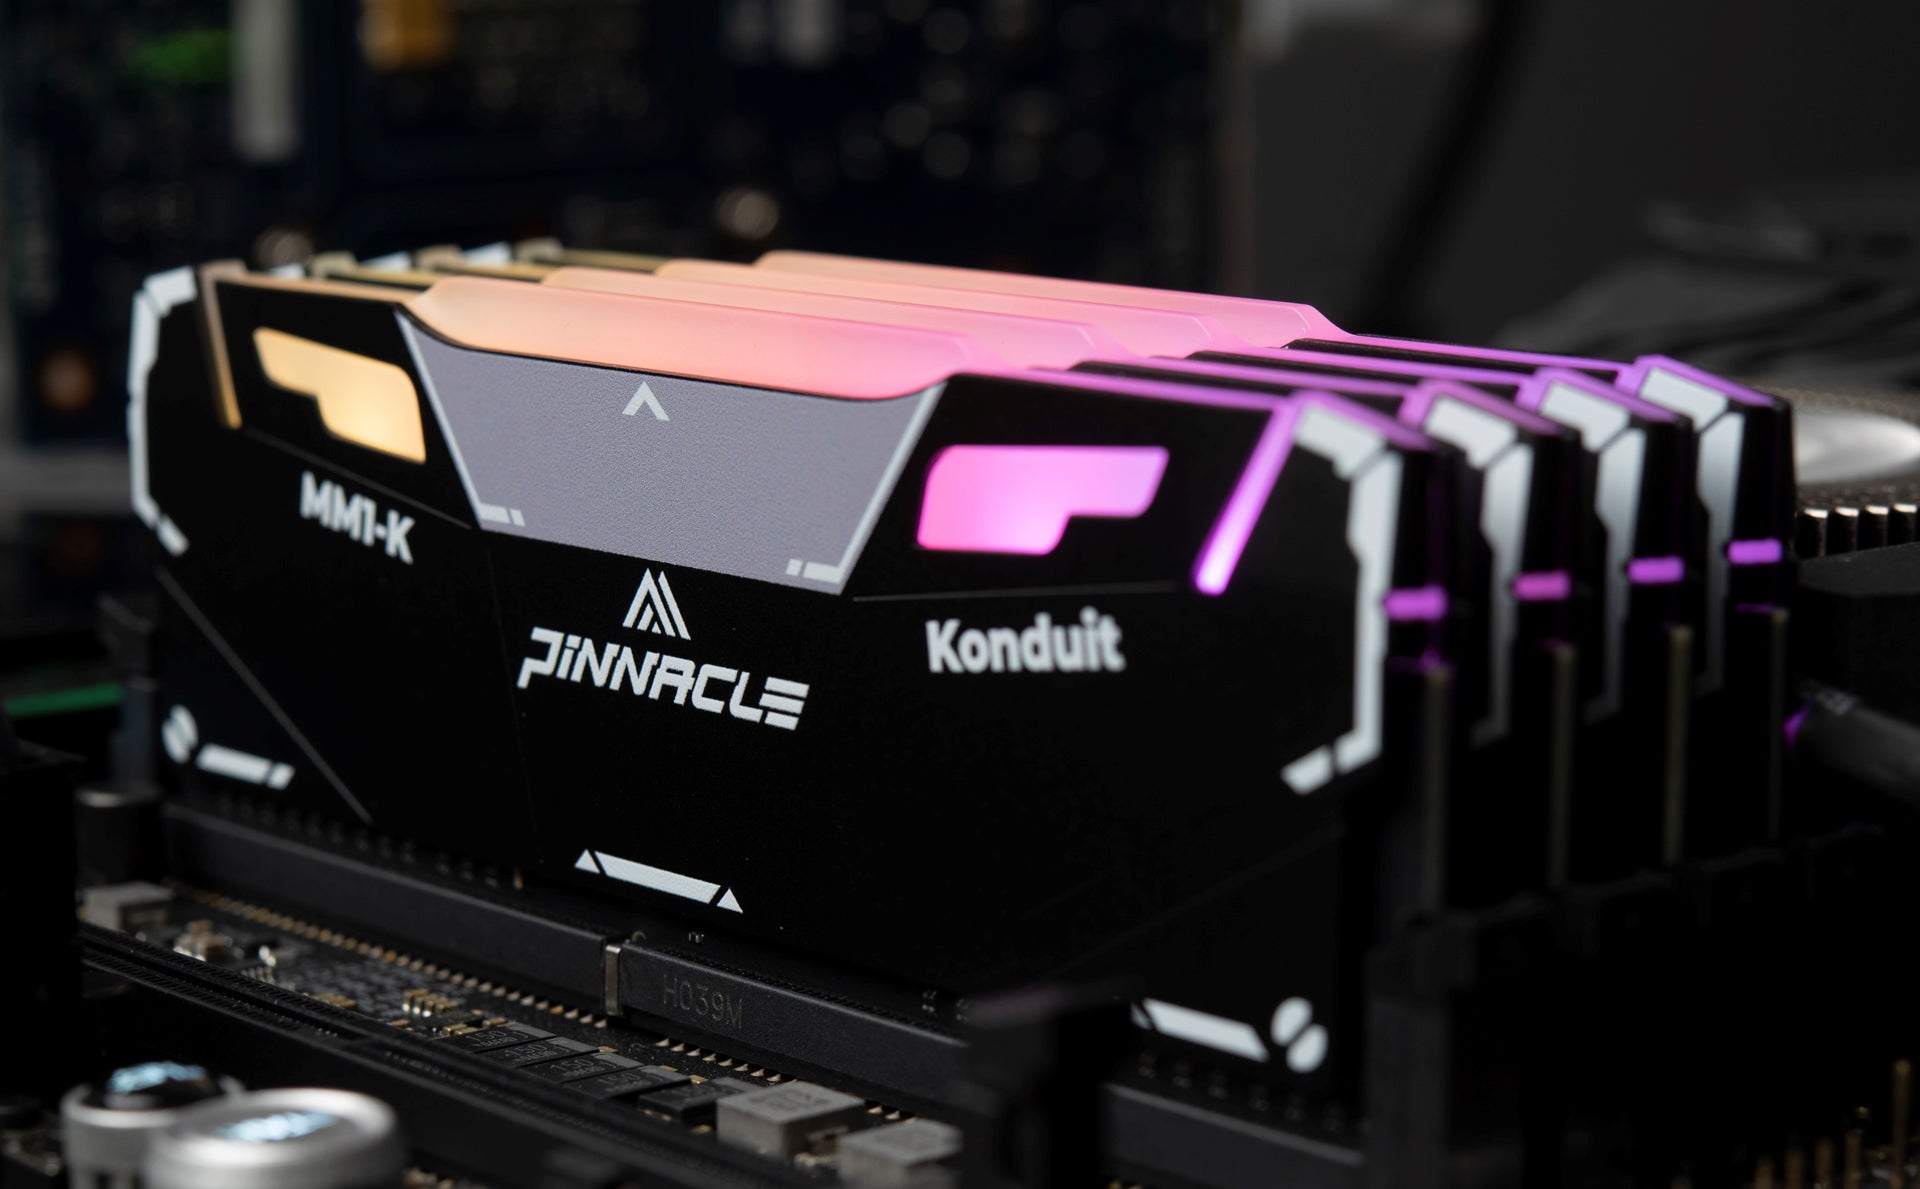 PINNACLE MM1-KONDUIT RGB Performance DDR4 UDIMM Memory